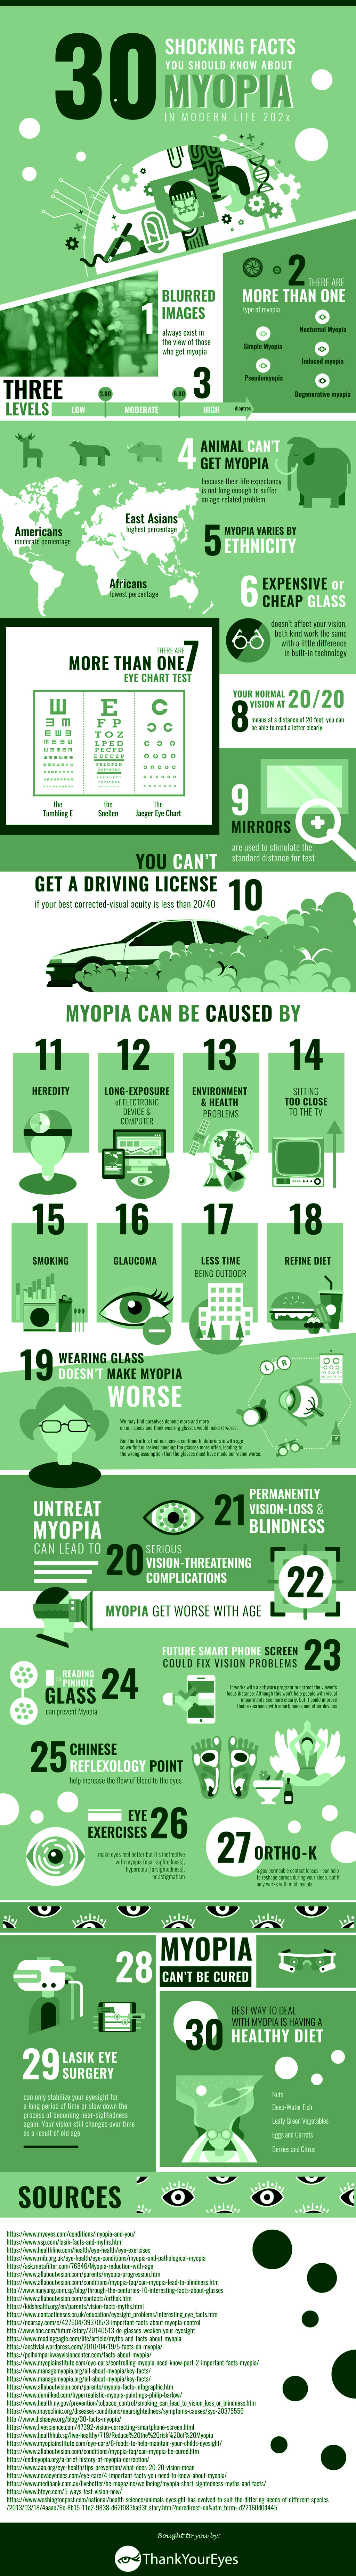 Infographic: Myopia Facts